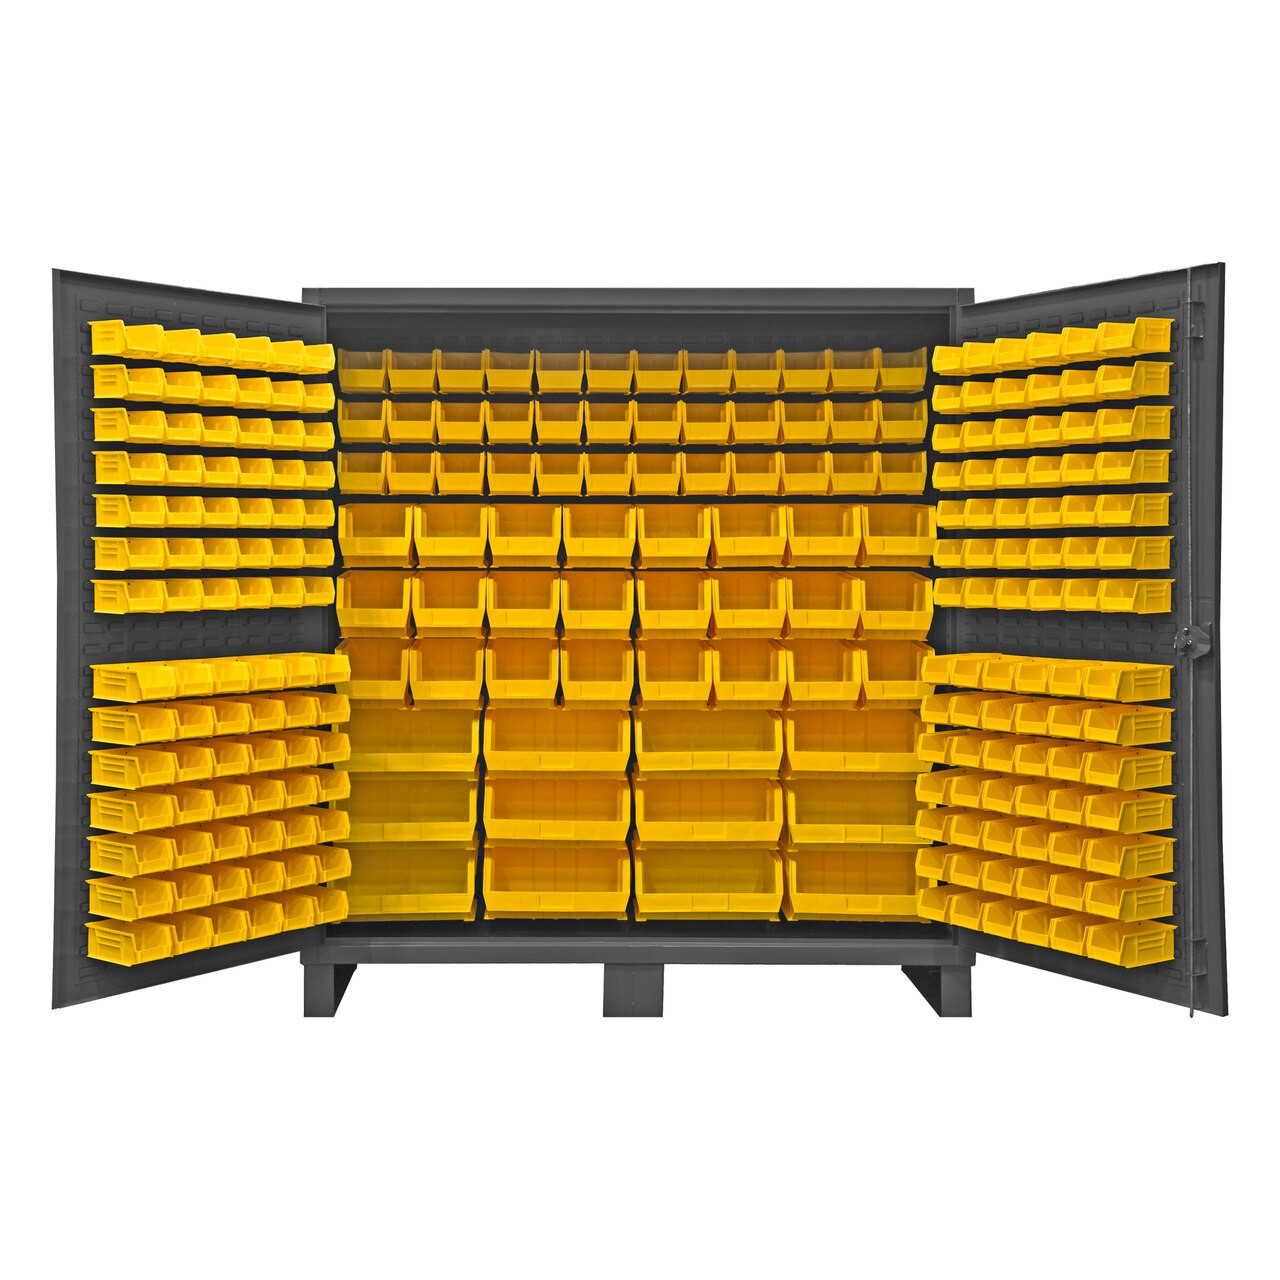 Bin Cabinet,Ind,12 ga,240Bins,Yellow Durham HDC72-240-95